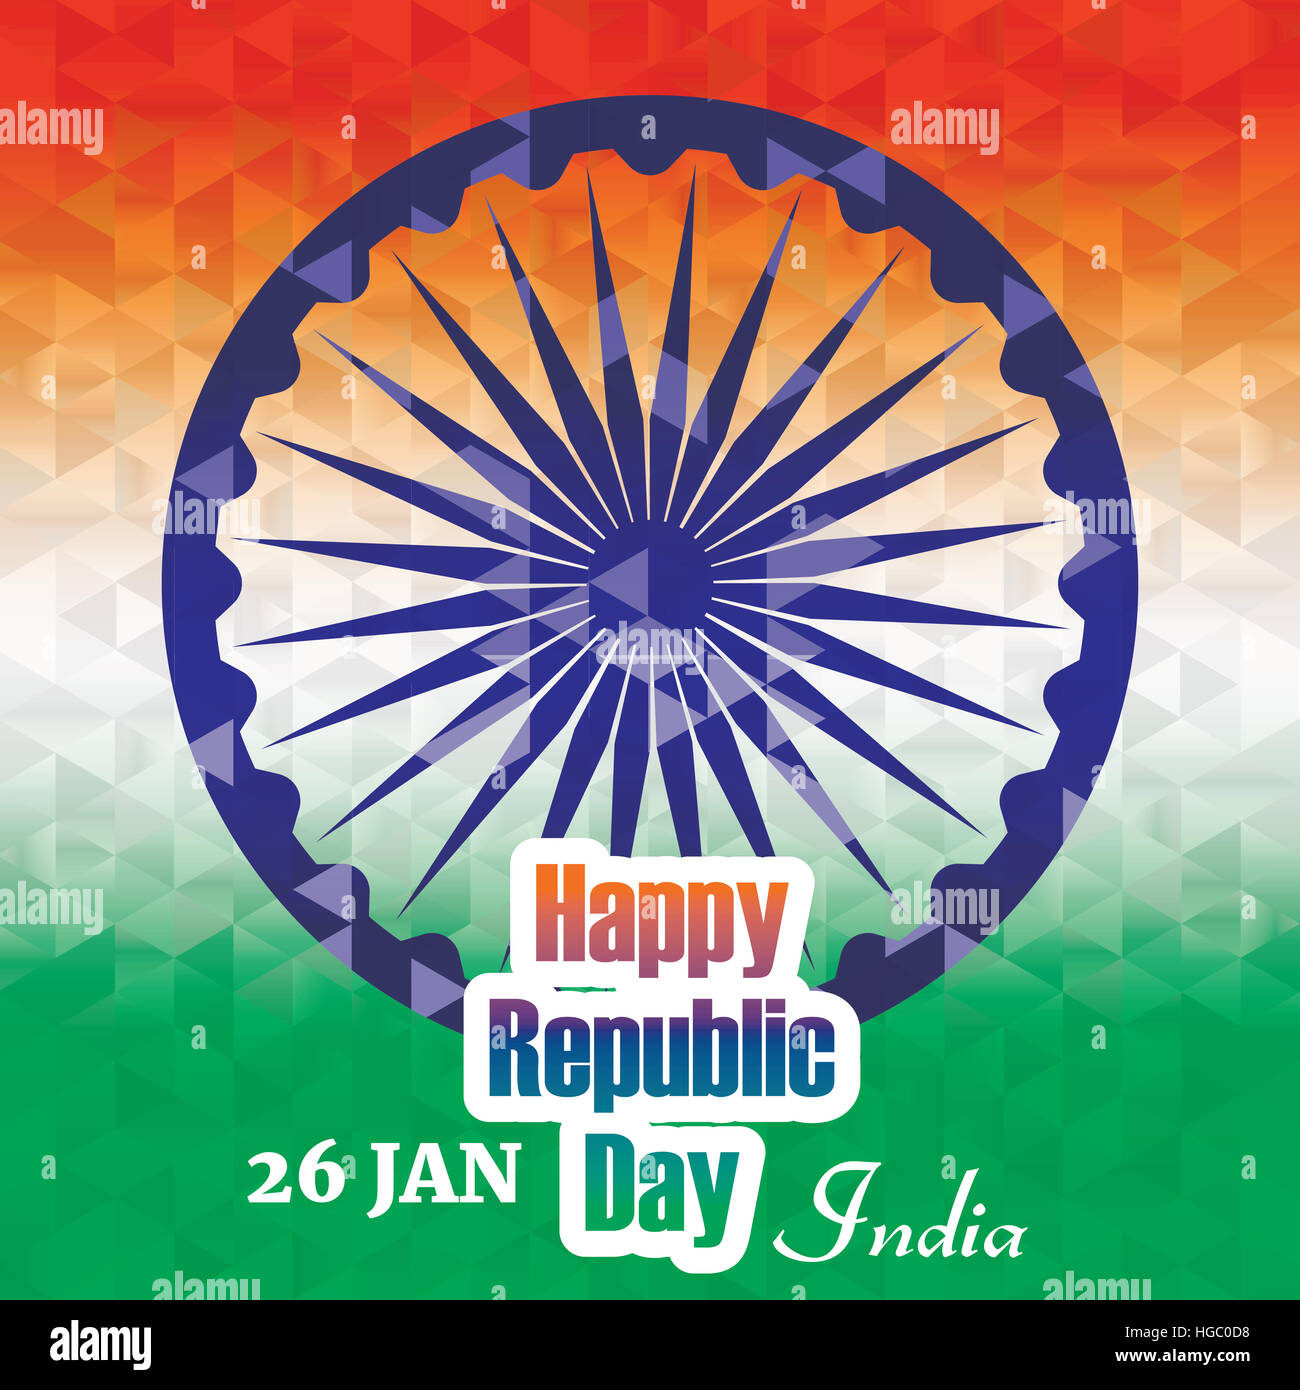 Fête de la République indienne et de la bannière d'accueil à l'élégant design tricolore géométrique abstraite Banque D'Images